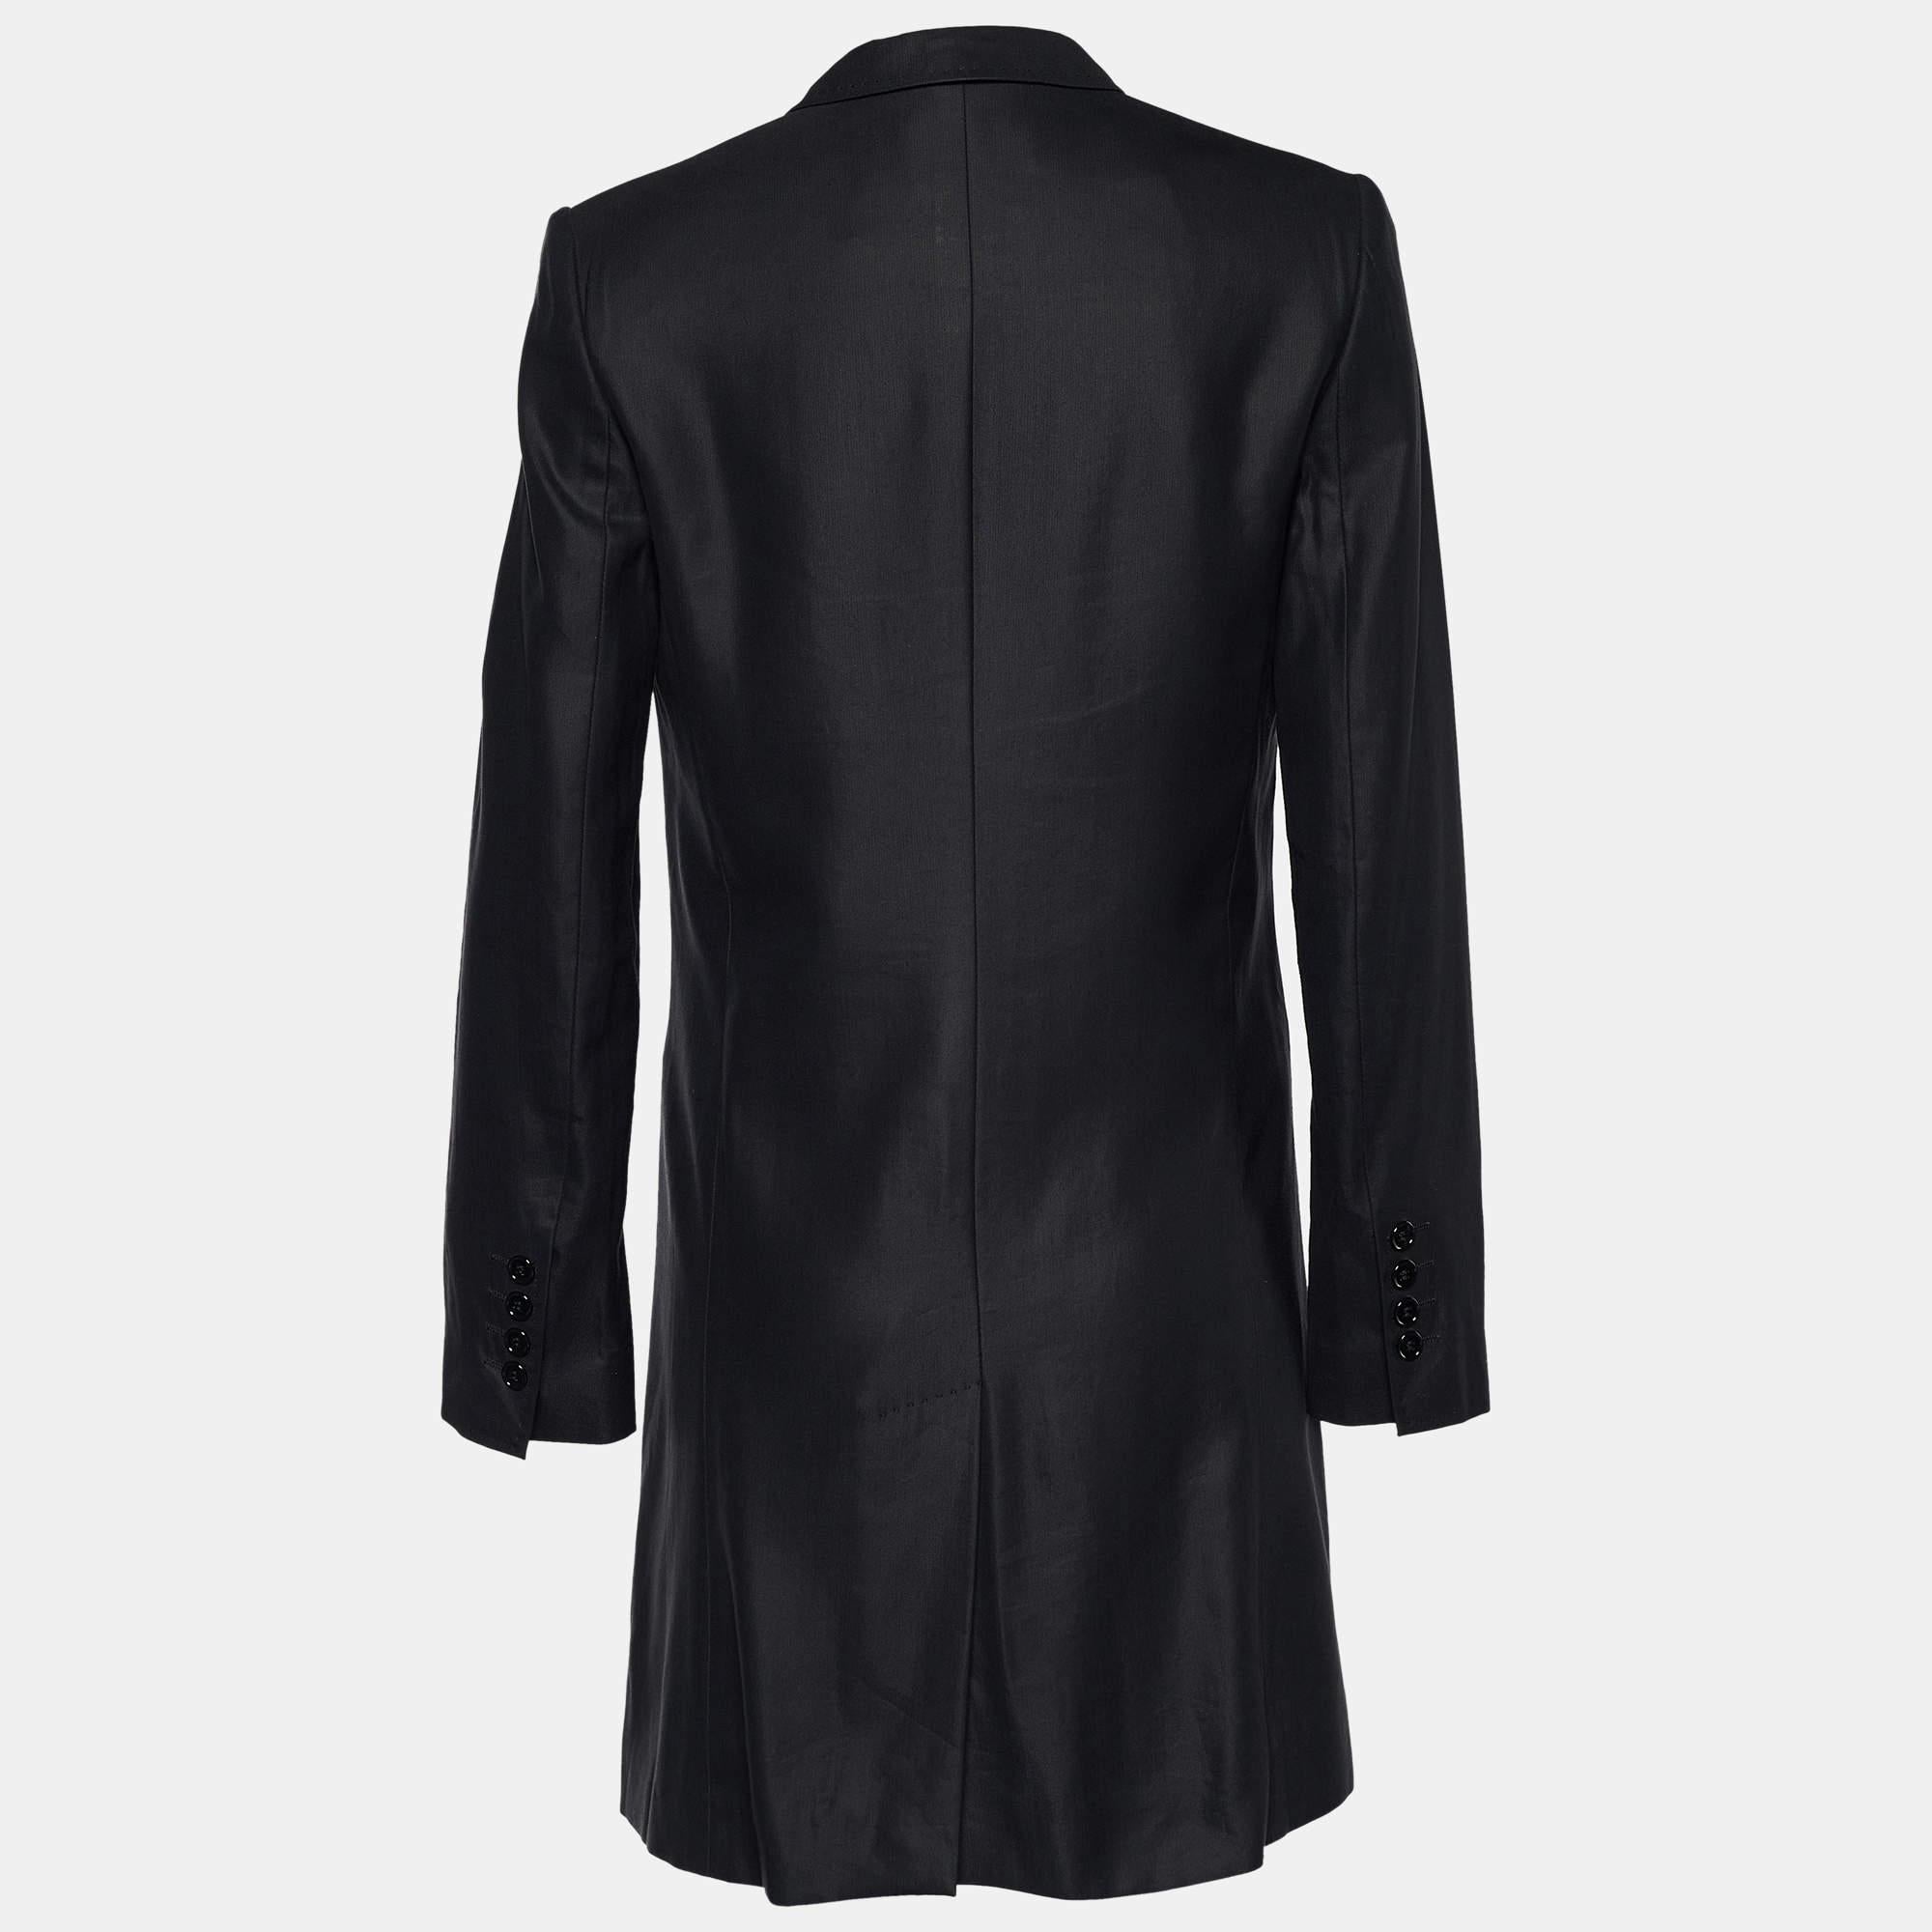 Um Ihrer Wintergarderobe etwas mehr Eleganz zu verleihen, ist dieser Mantel von Dolce & Gabbana alles, was Sie brauchen. Der mittellange Mantel mit langen Ärmeln und Knopfleiste verfügt über Vordertaschen. Die strukturierte Form verleiht ihm einen